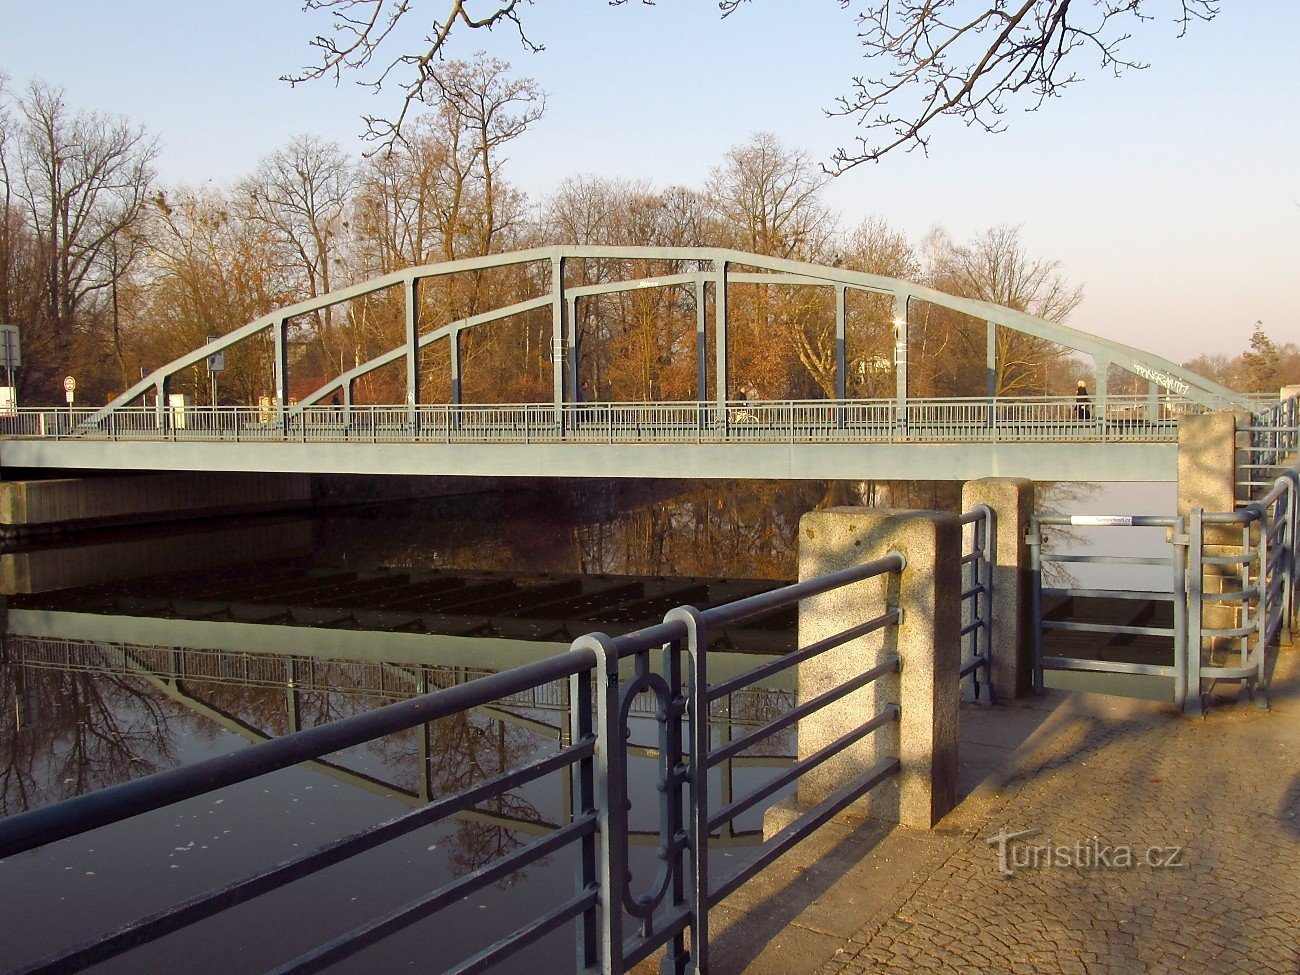 Czeskie Budziejowice - Żelazny Most